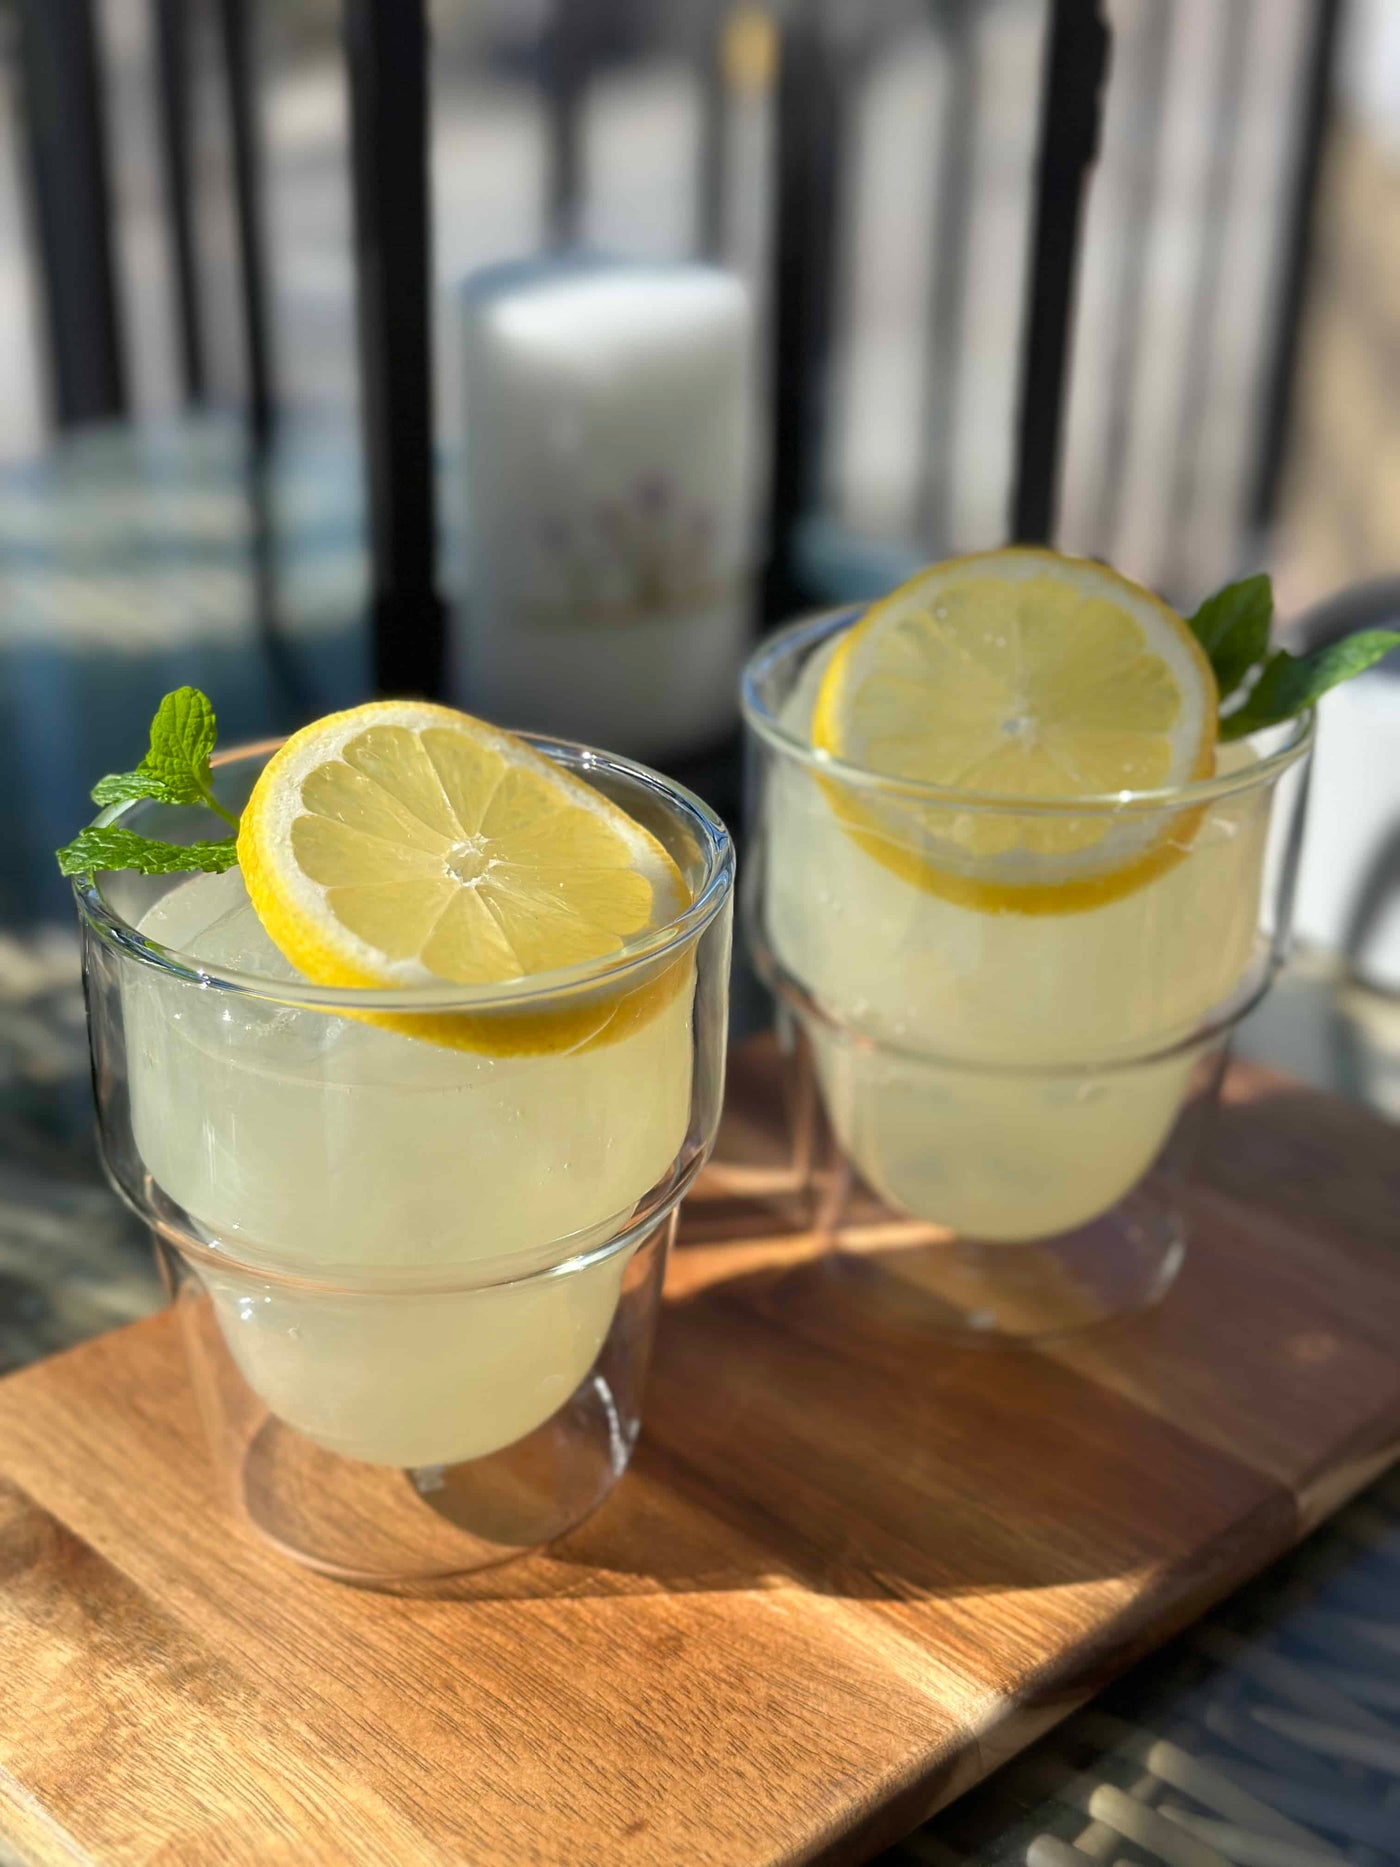 Njut av svalkande lemonad under årets varma sommardagar